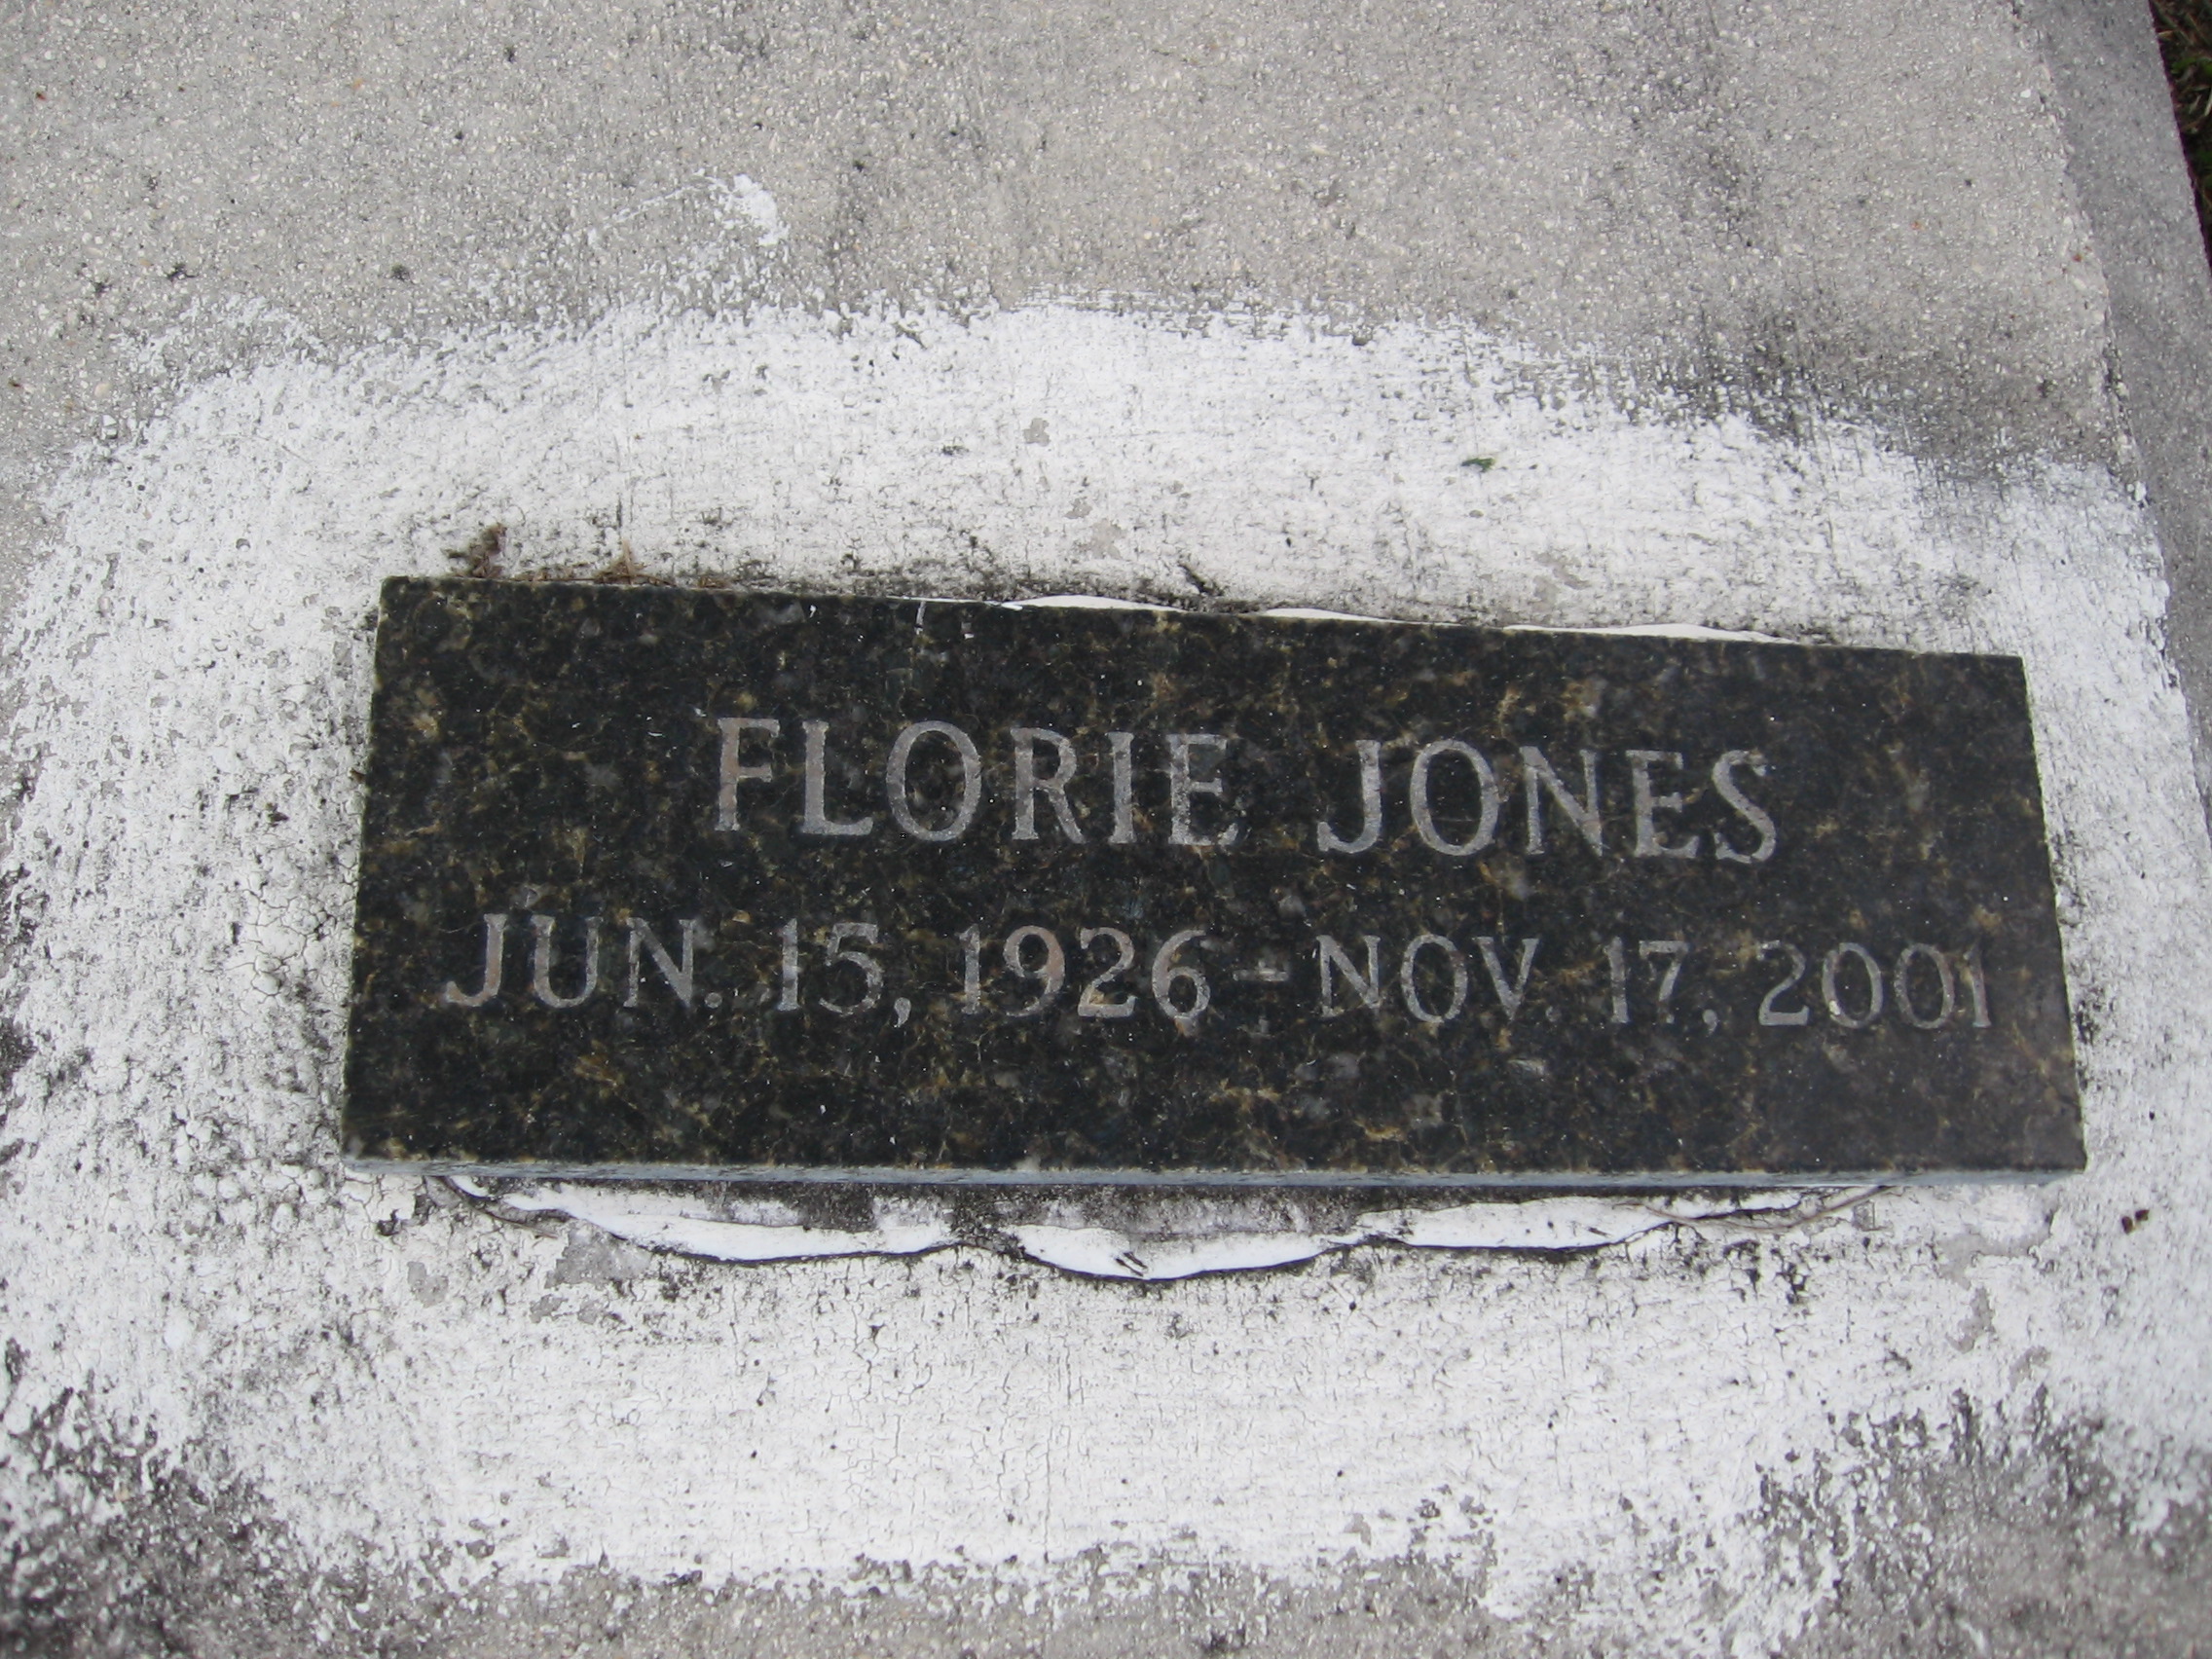 Florie Jones